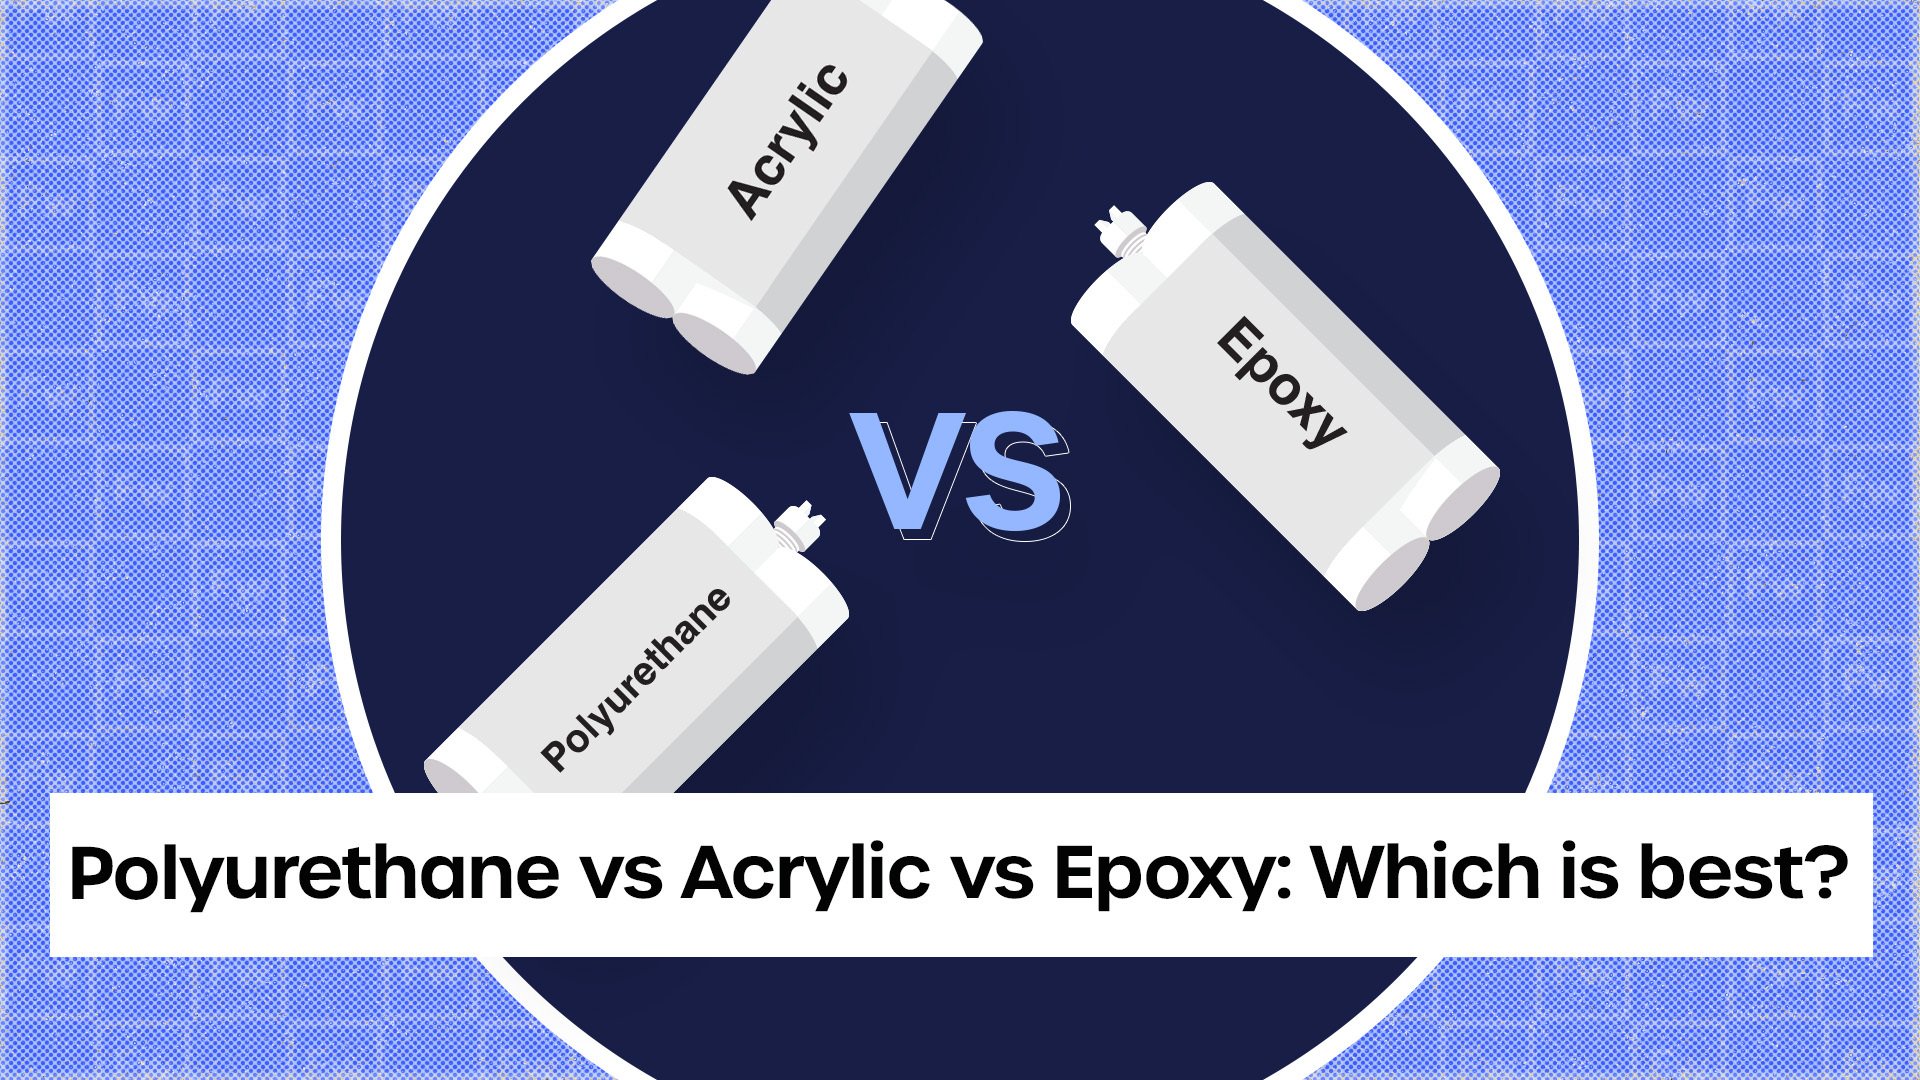 Comparing epoxy adhesives v acrylic adhesives v polyurethane adhesives